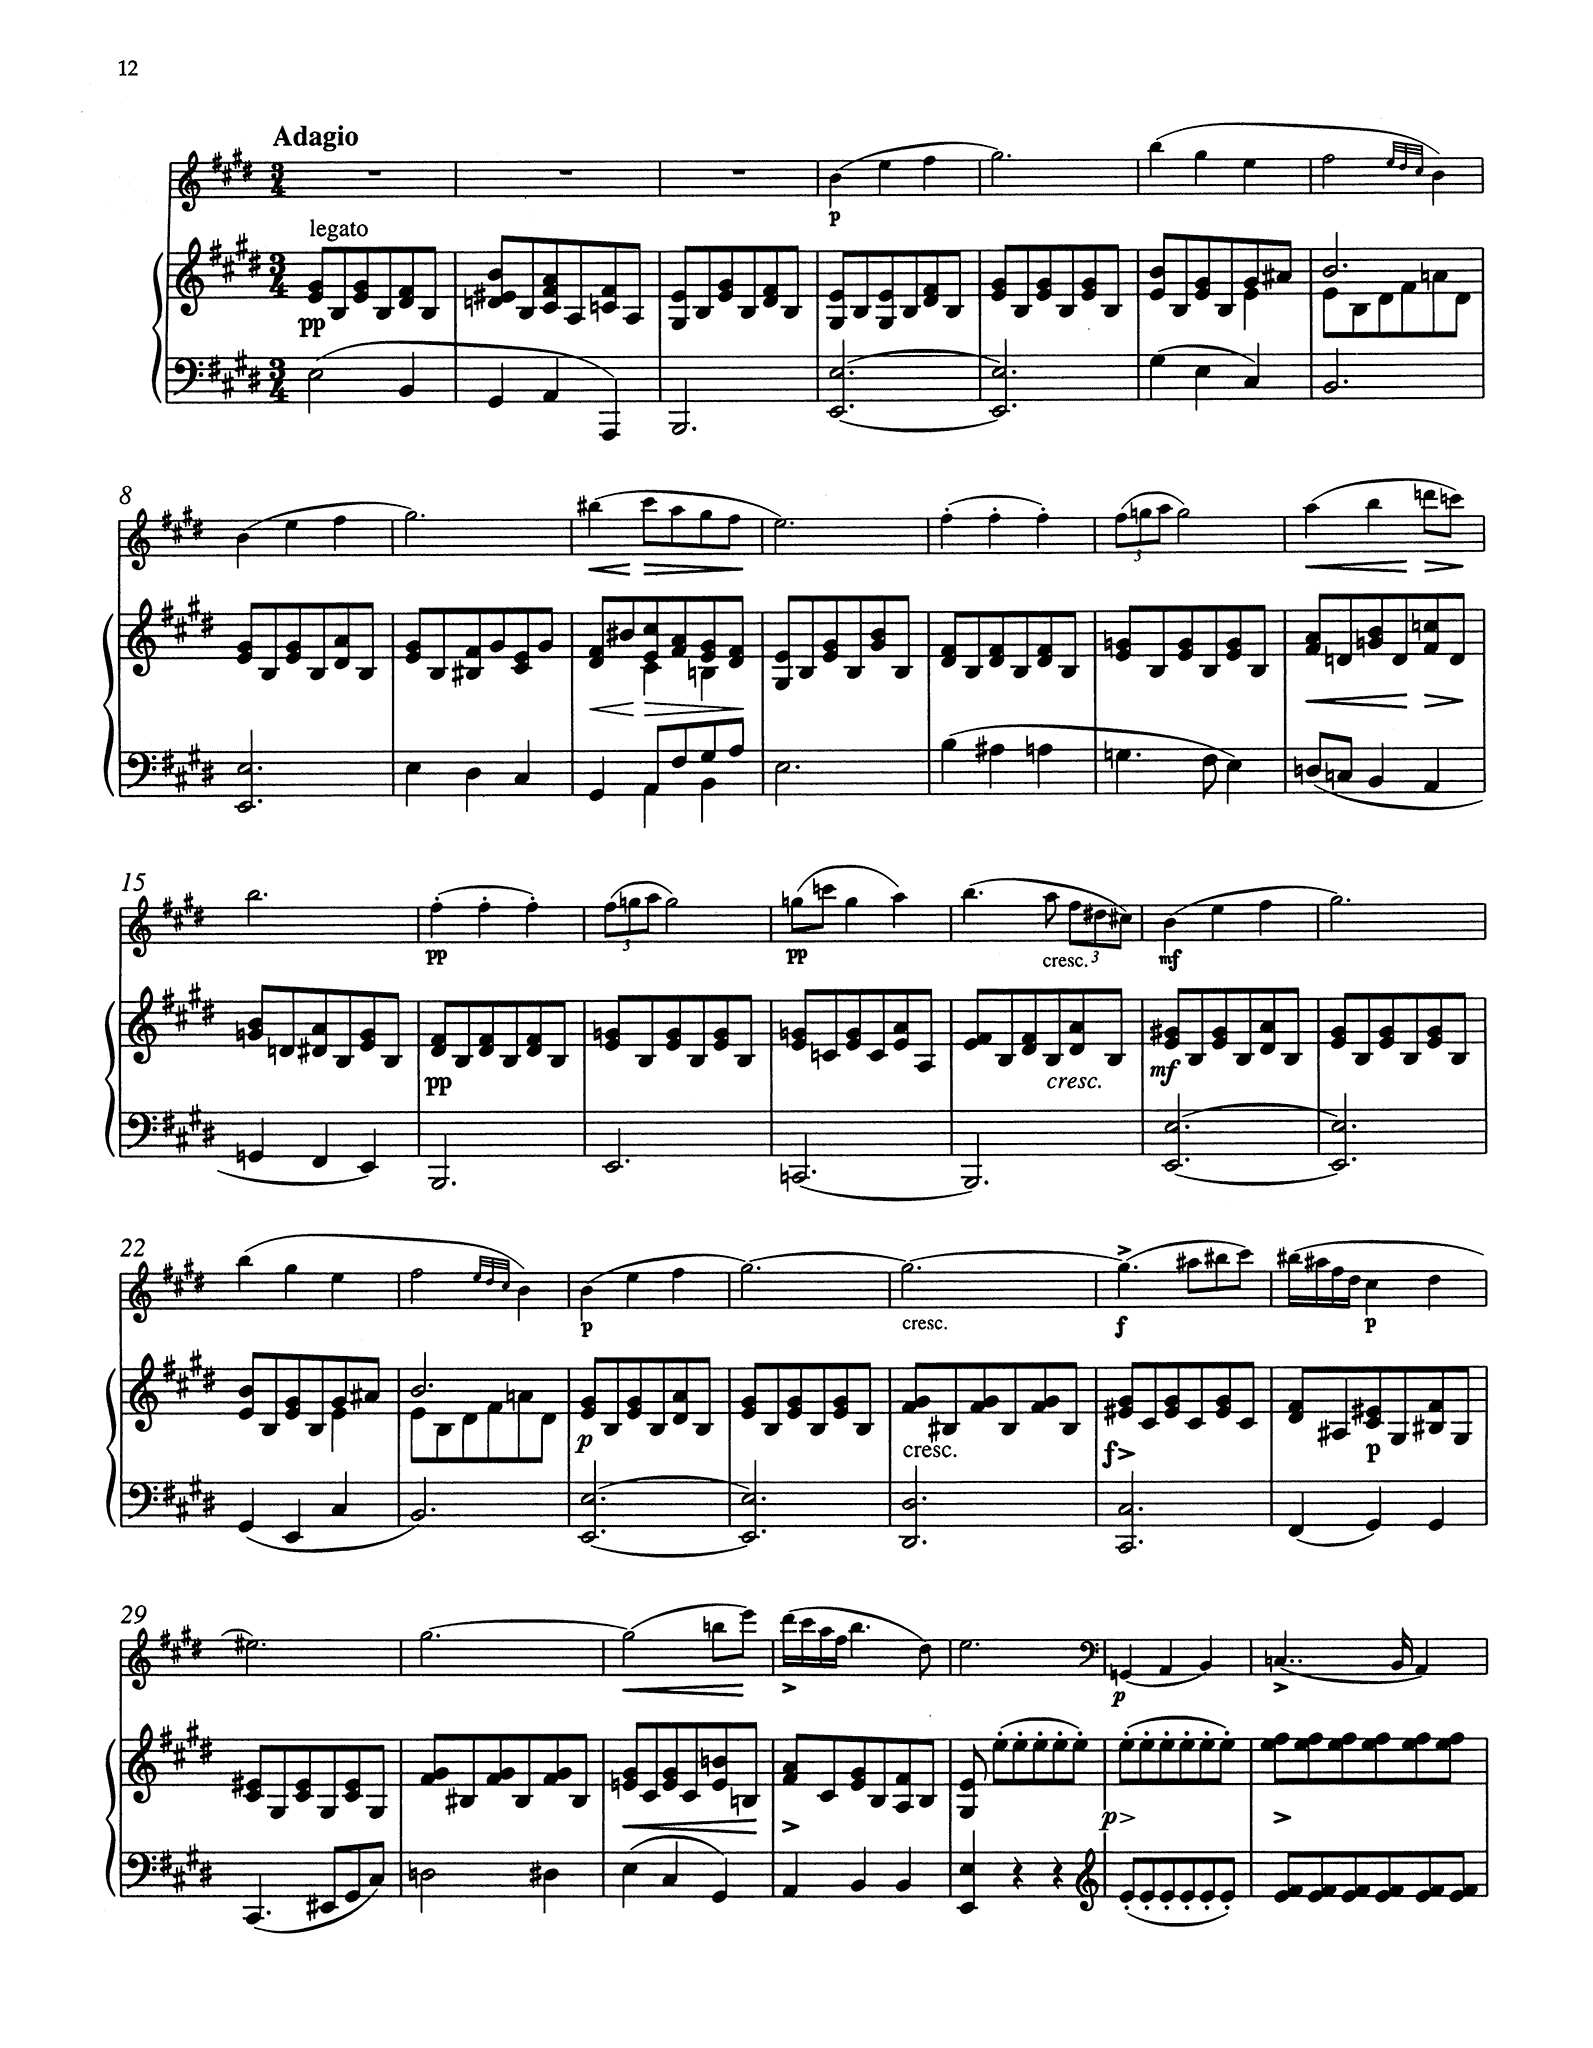 Schubert Sonata in A Minor, D. 821 ‘Arpeggione’ - Movement 2